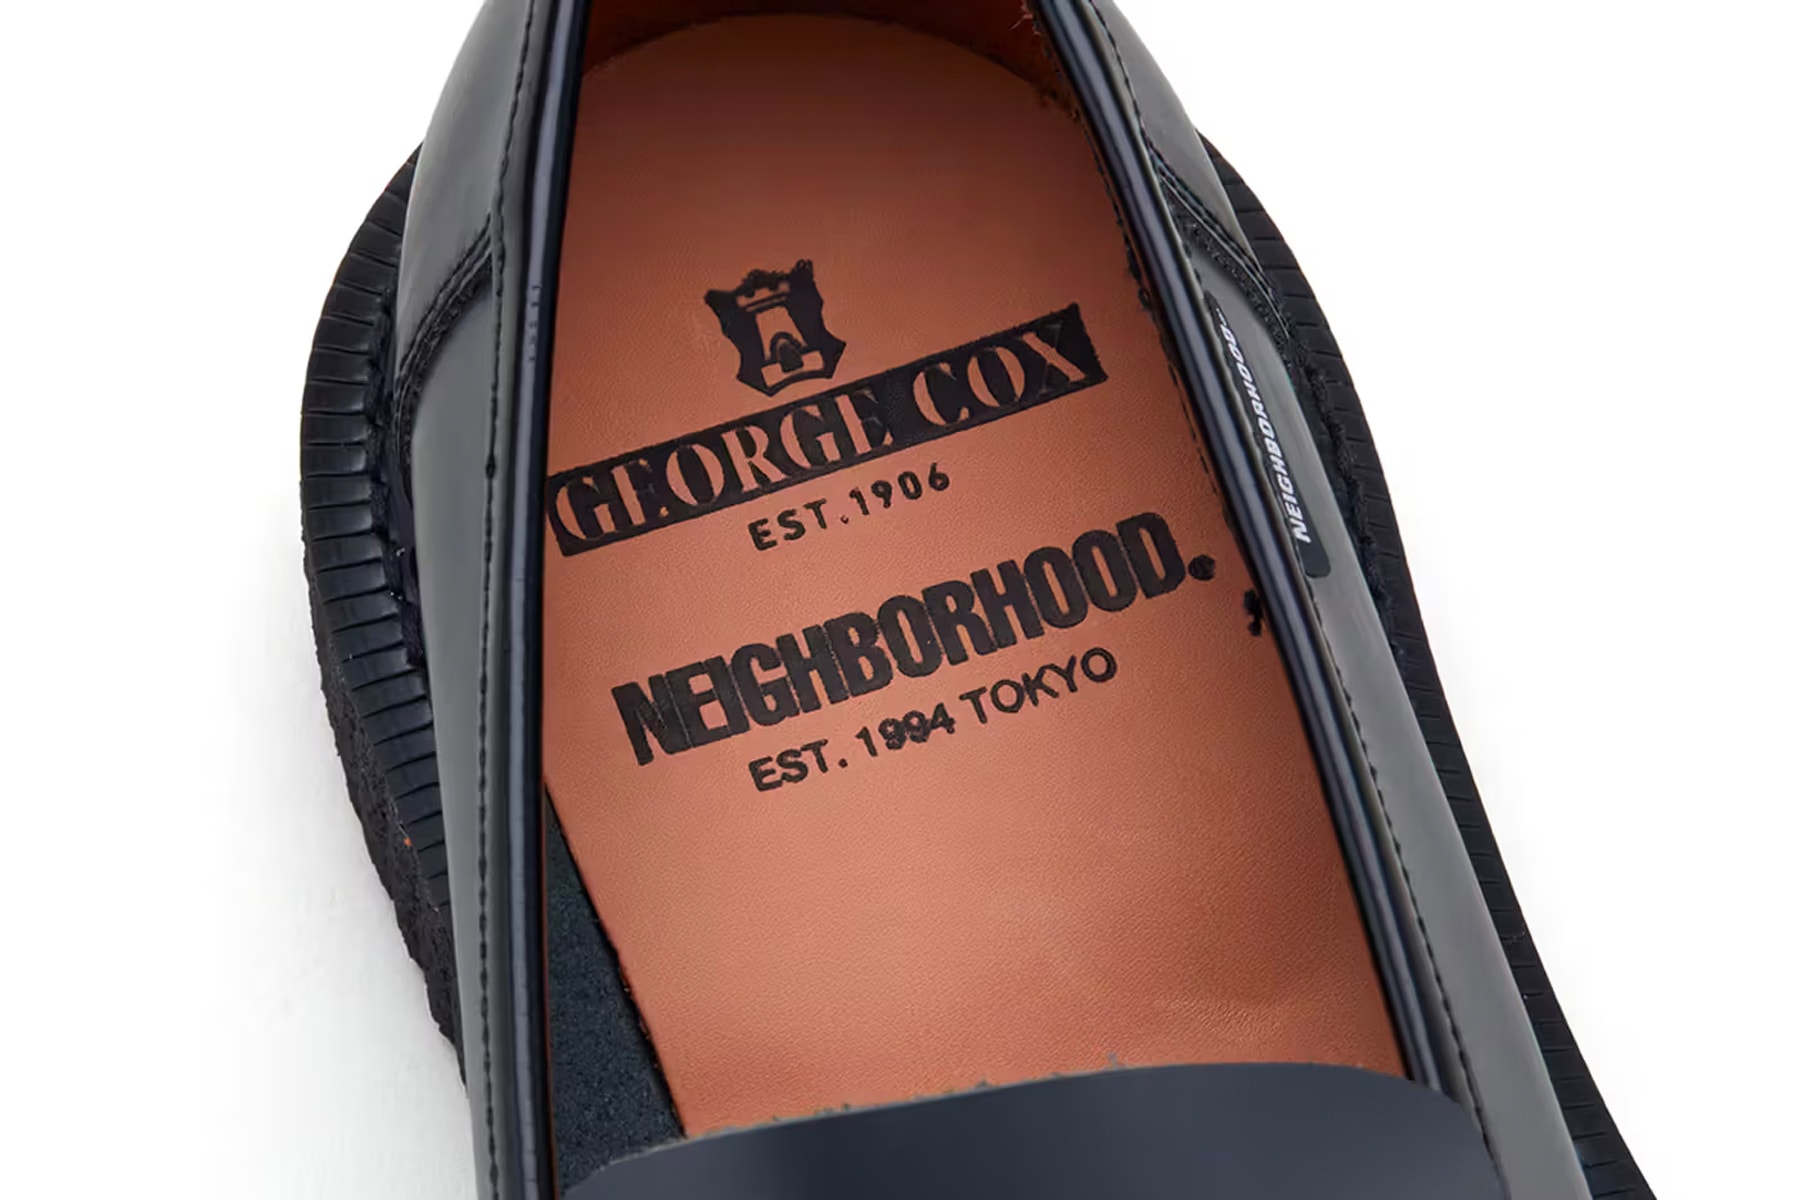 NEIGHBORHOOD x George Cox 全新聯名鞋款正式登場